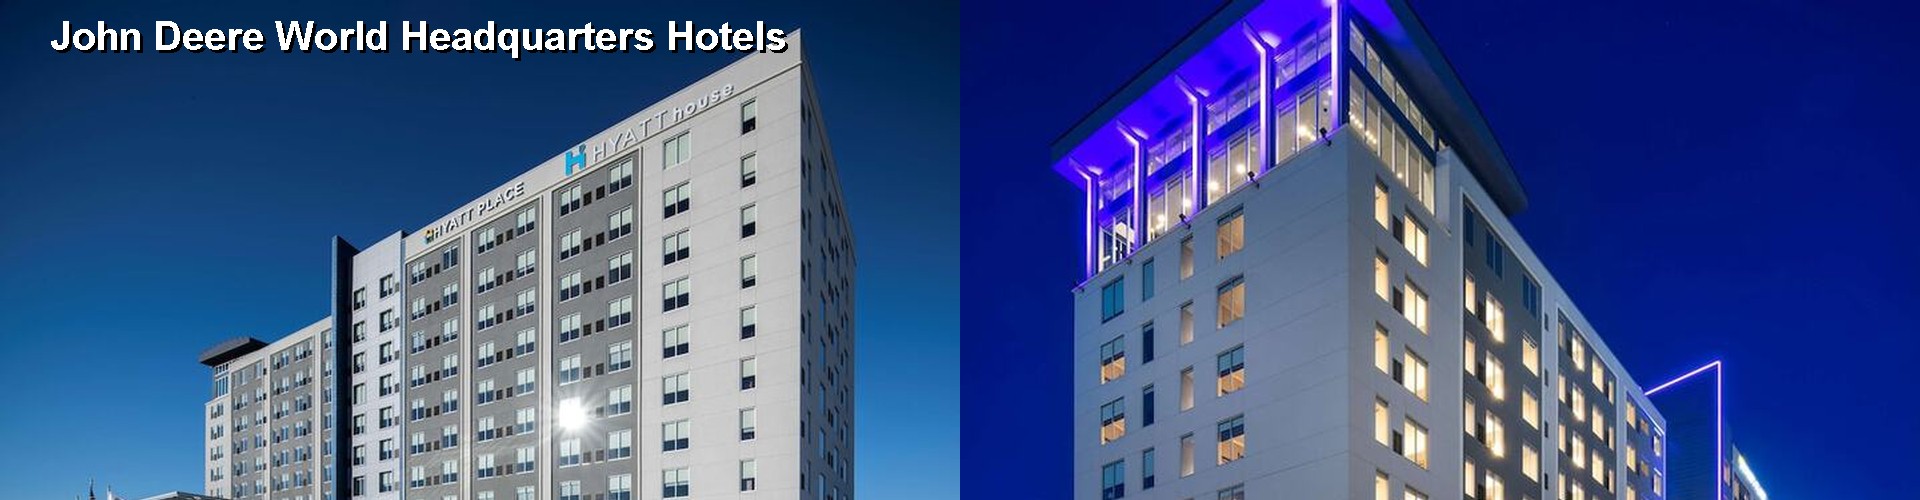 4 Best Hotels near John Deere World Headquarters